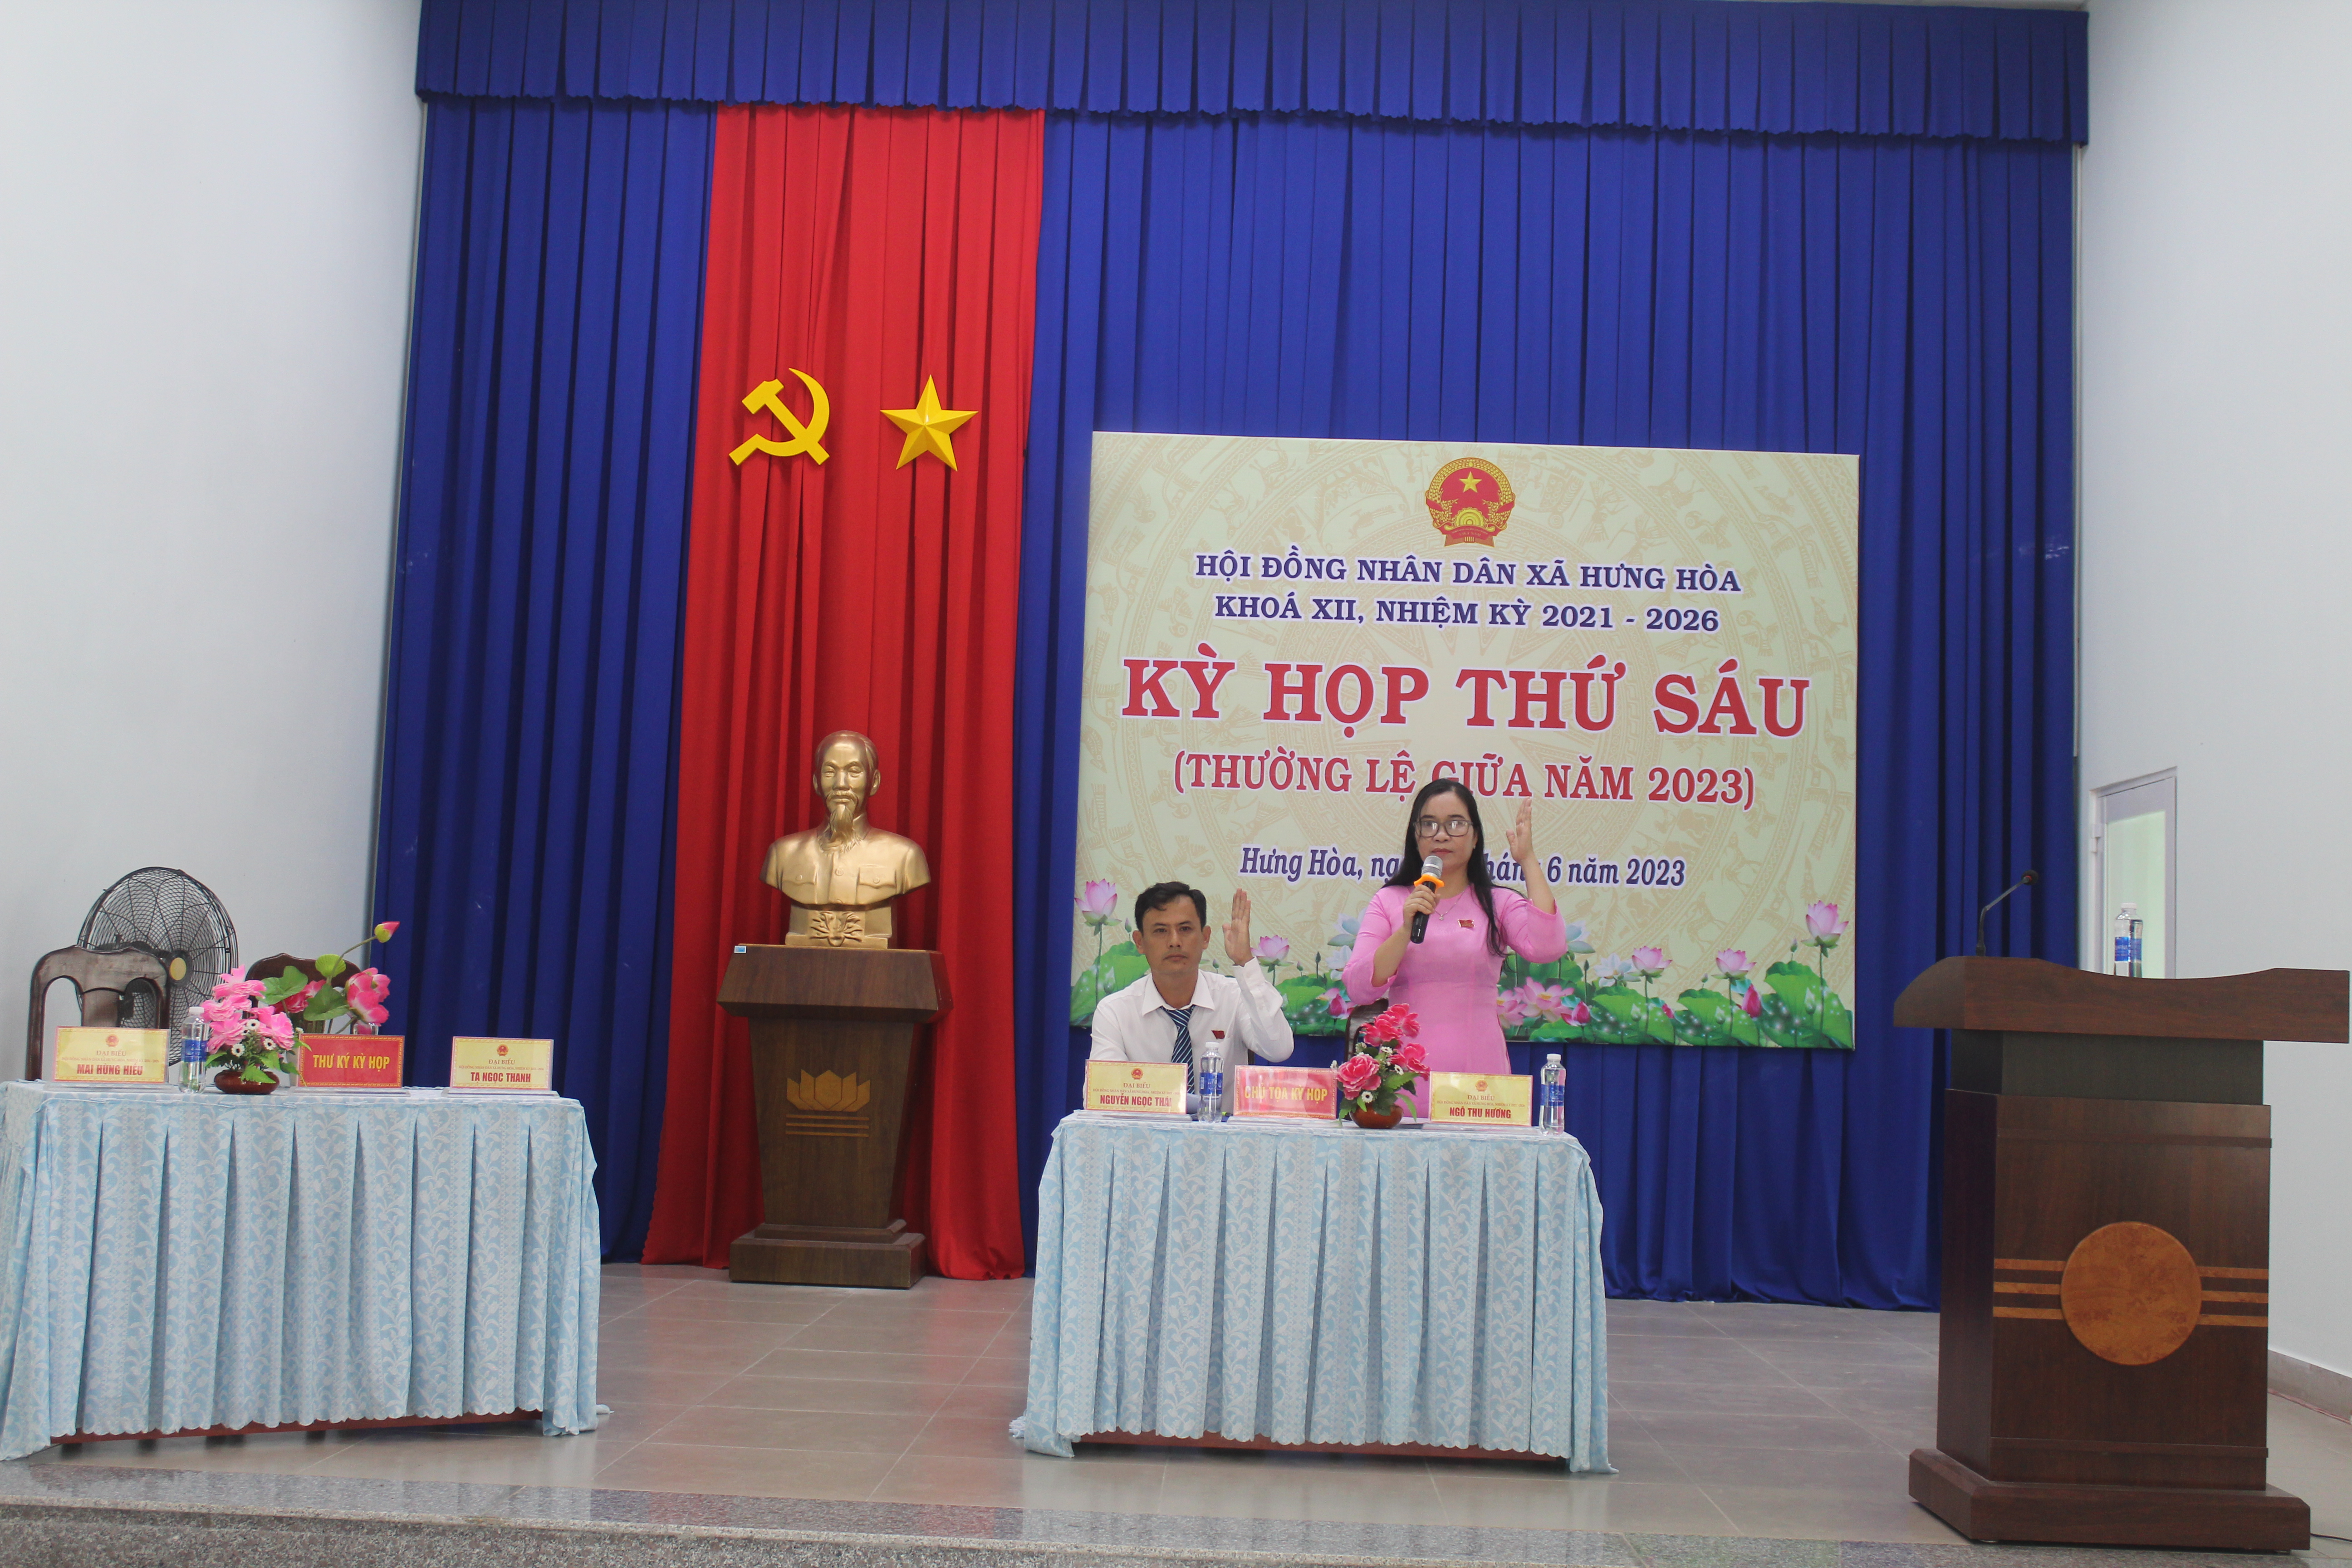 Xã Hưng Hòa: Hội đồng nhân dân xã Hưng Hoà tổ chức kỳ họp thứ sáu HĐND xã Hưng Hòa nhiệm kỳ 2021-2026.